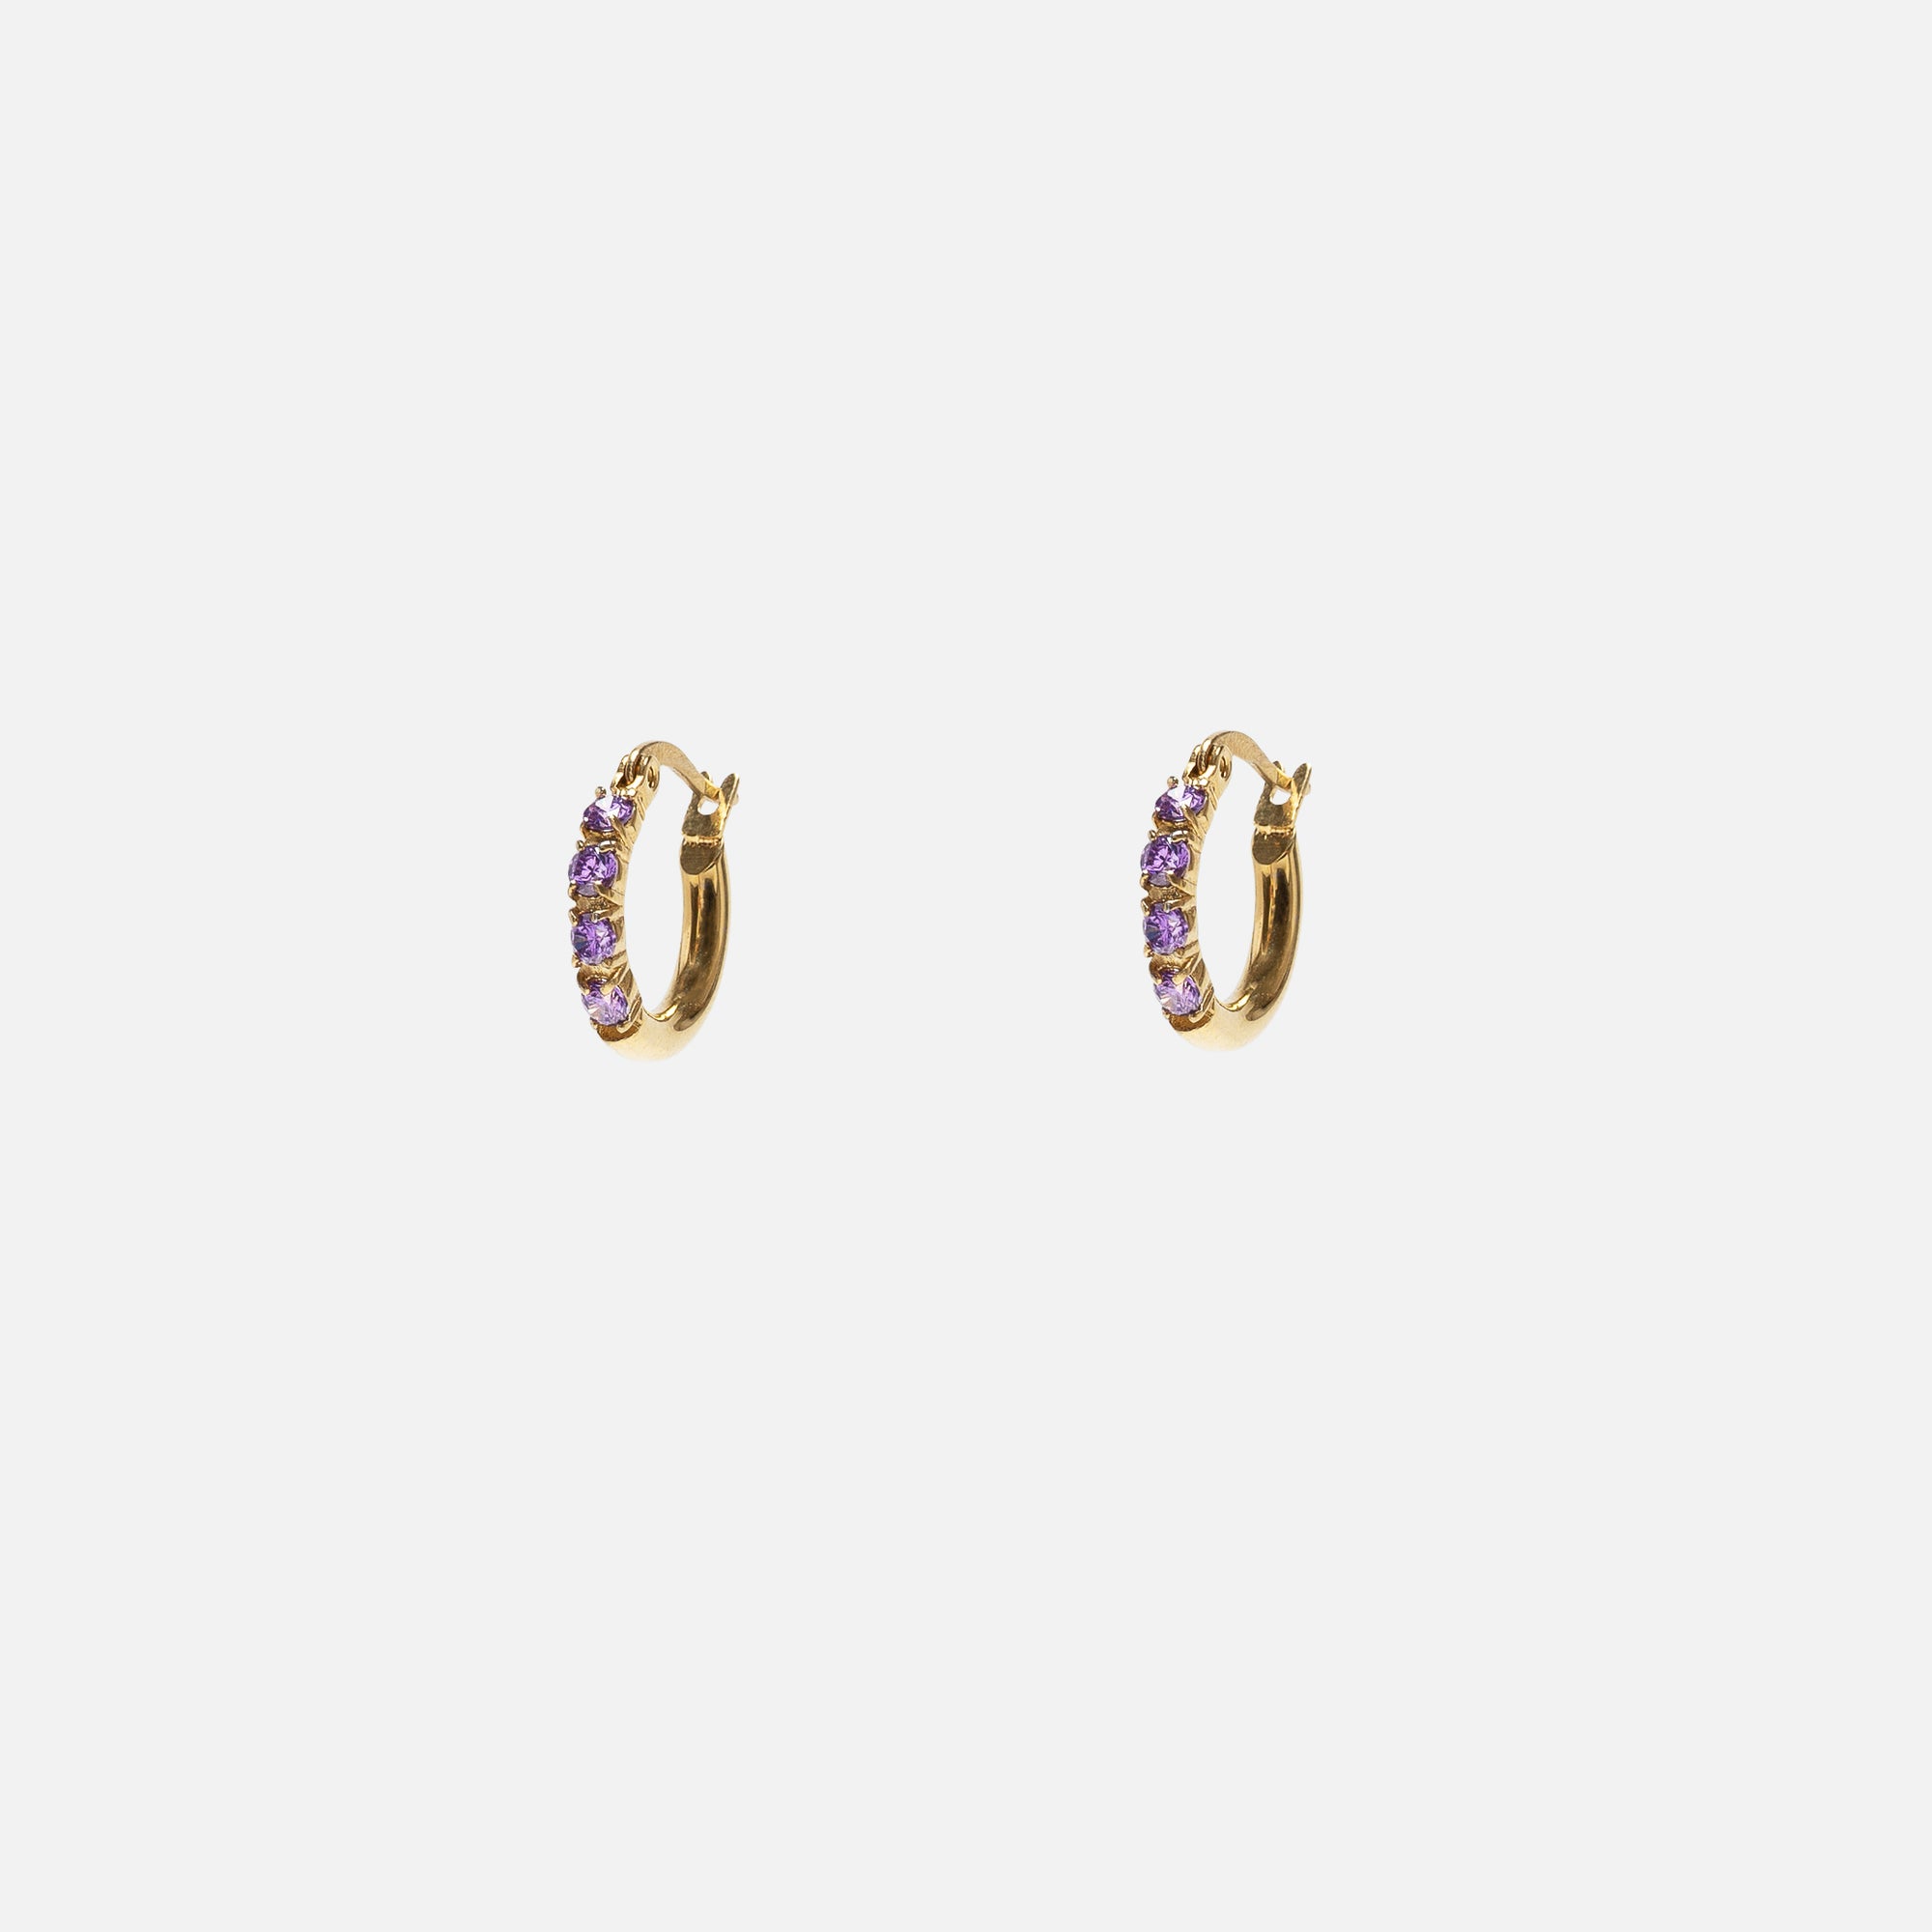 Boucles d’oreilles anneaux dorés avec pierres violettes en acier inoxydable